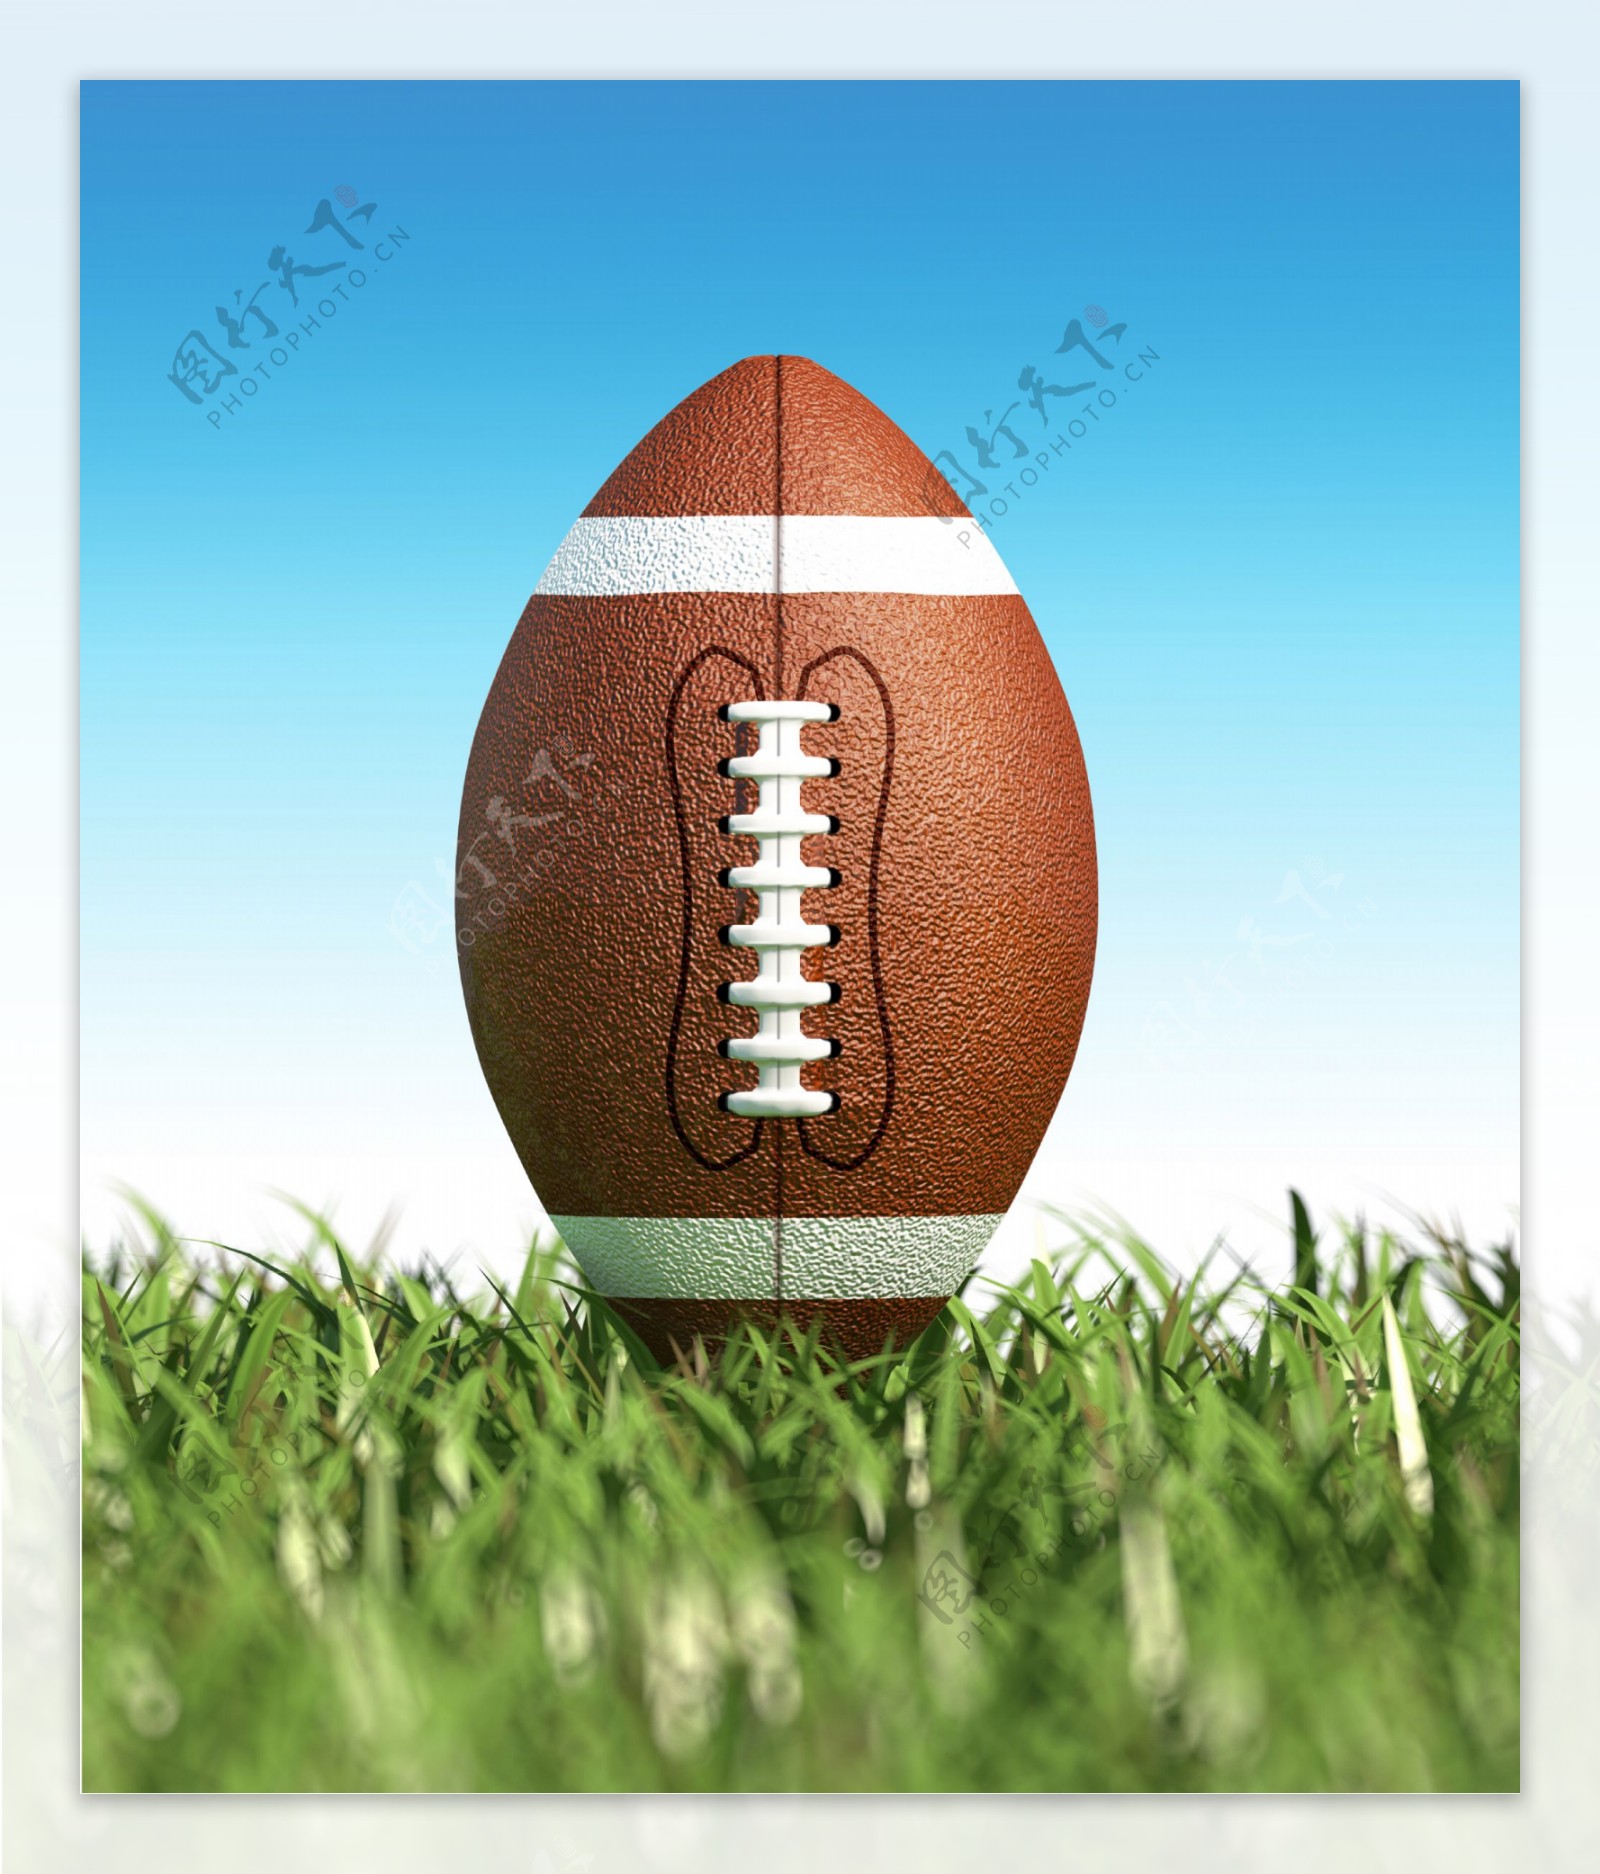 草地上立着的橄榄球图片